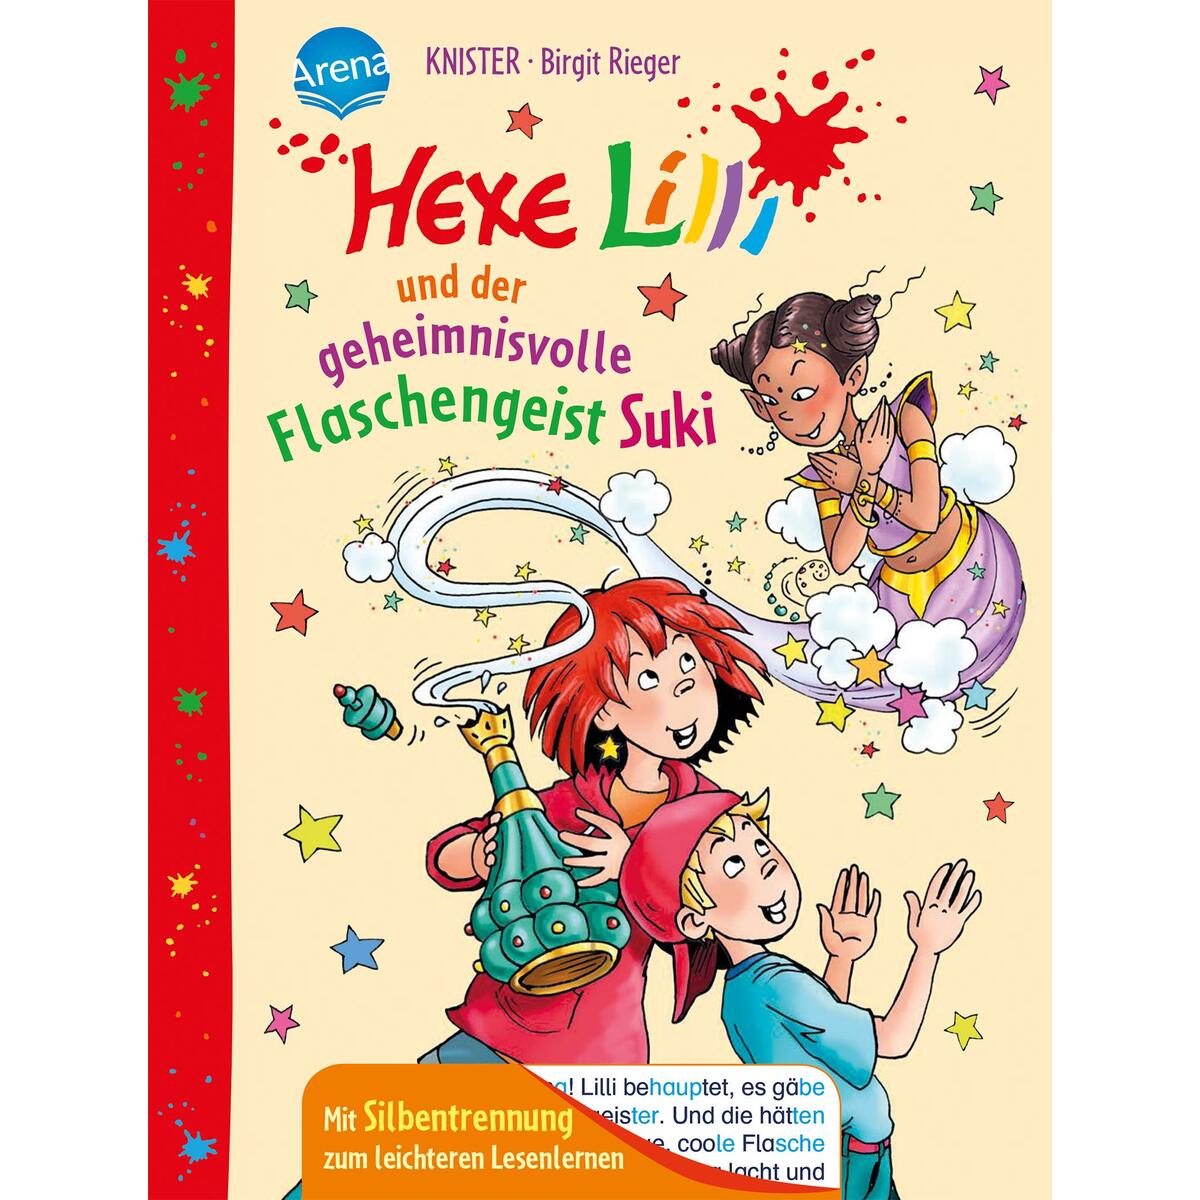 Hexe Lilli und der geheimnisvolle Flaschengeist Suki von Arena Verlag GmbH